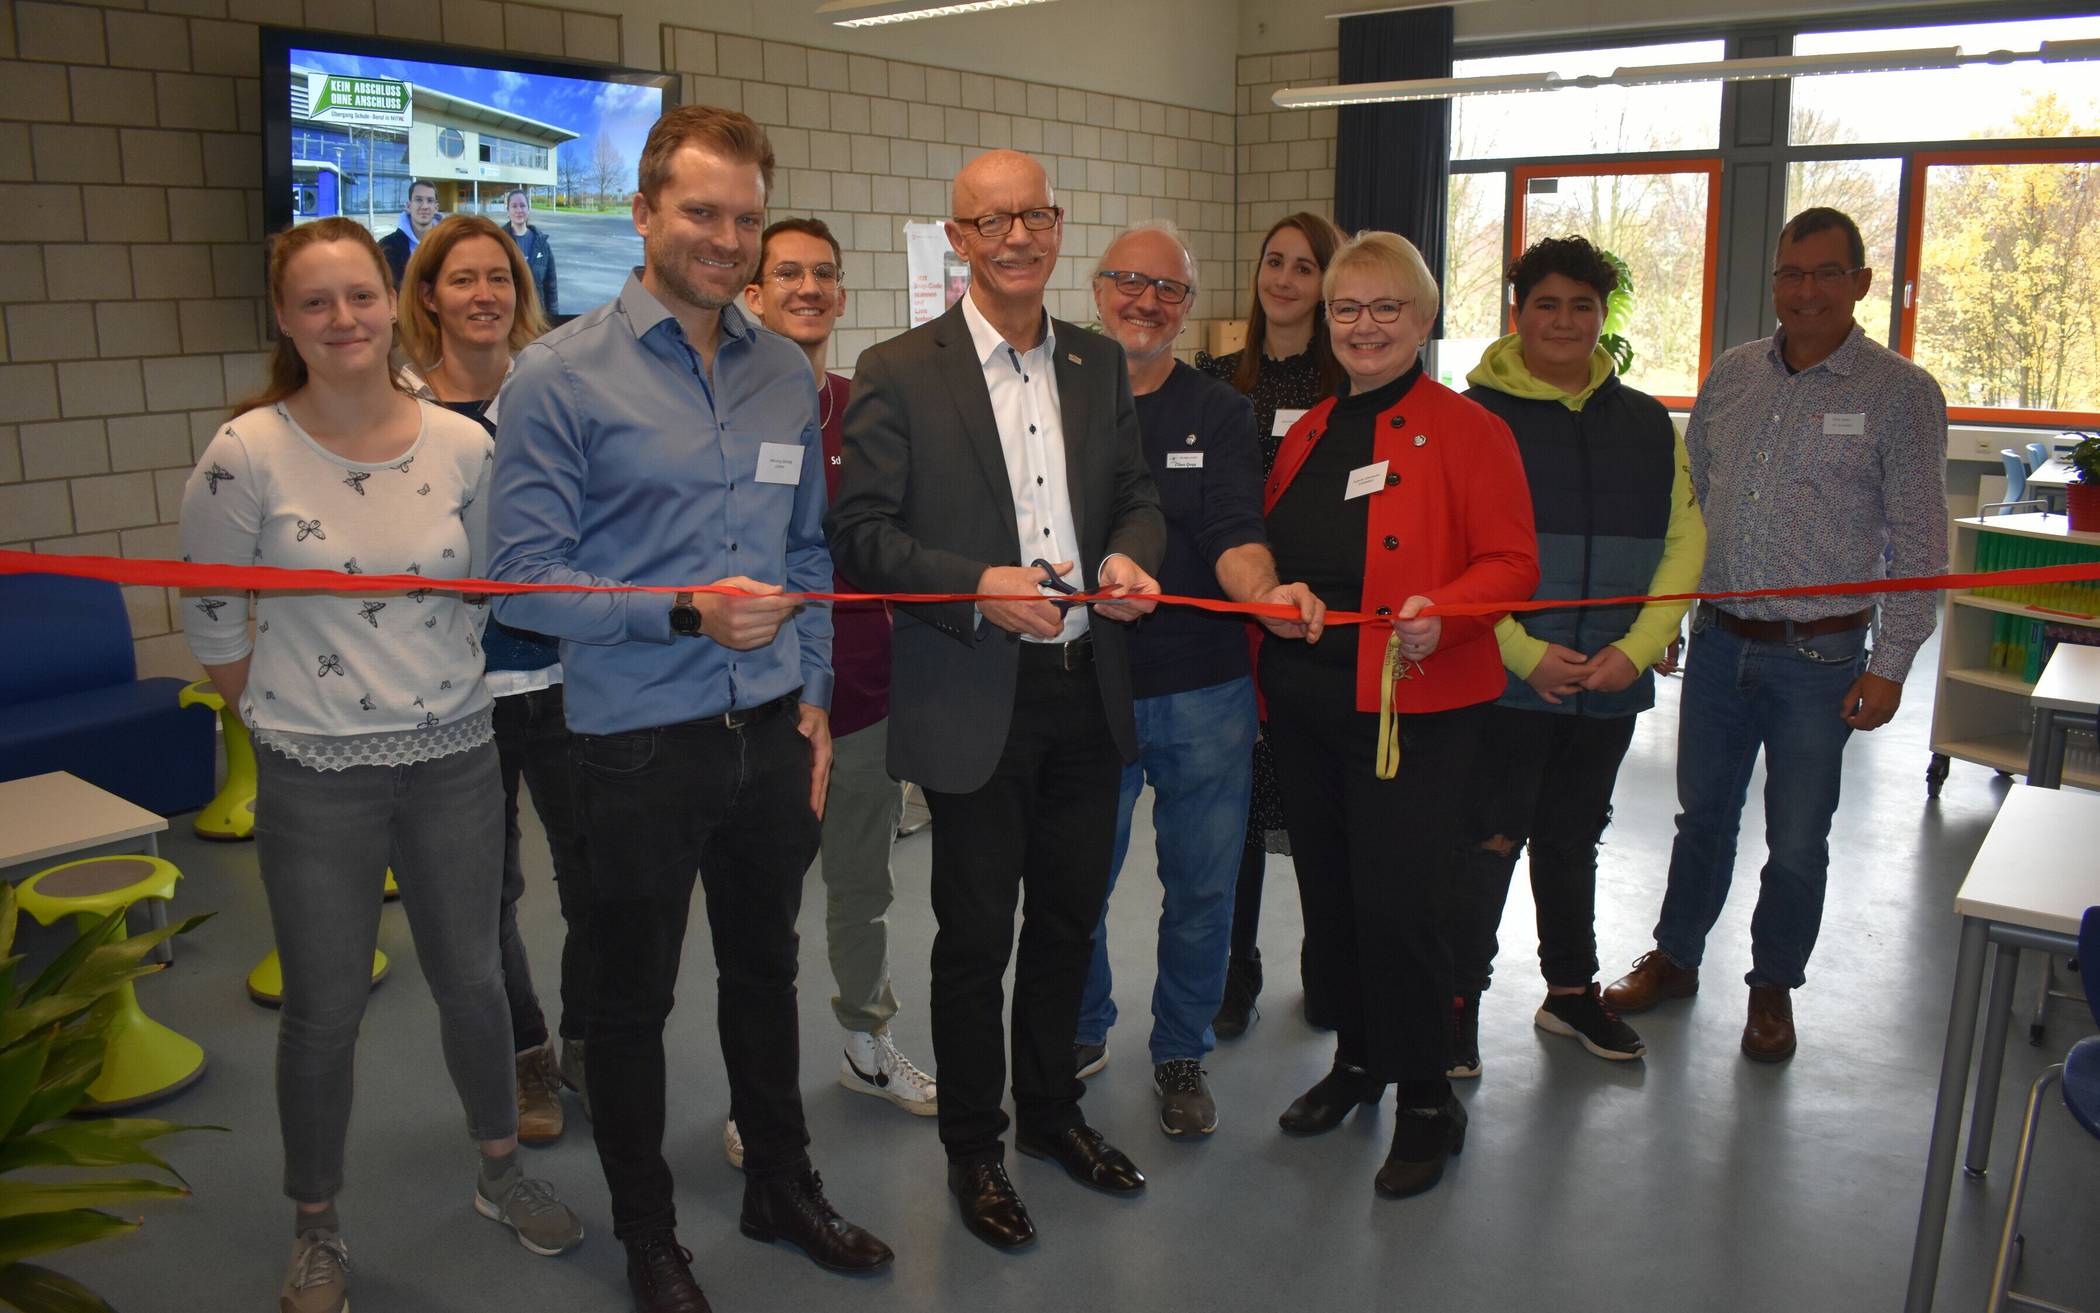  Bürgermeister Harald Zillikens eröffnete im Rahmen des Tages der offenen Tür feierlich das neue, modern ausgestattete Berufsorientierungsbüro an der Gesamtschule Jüchen. 